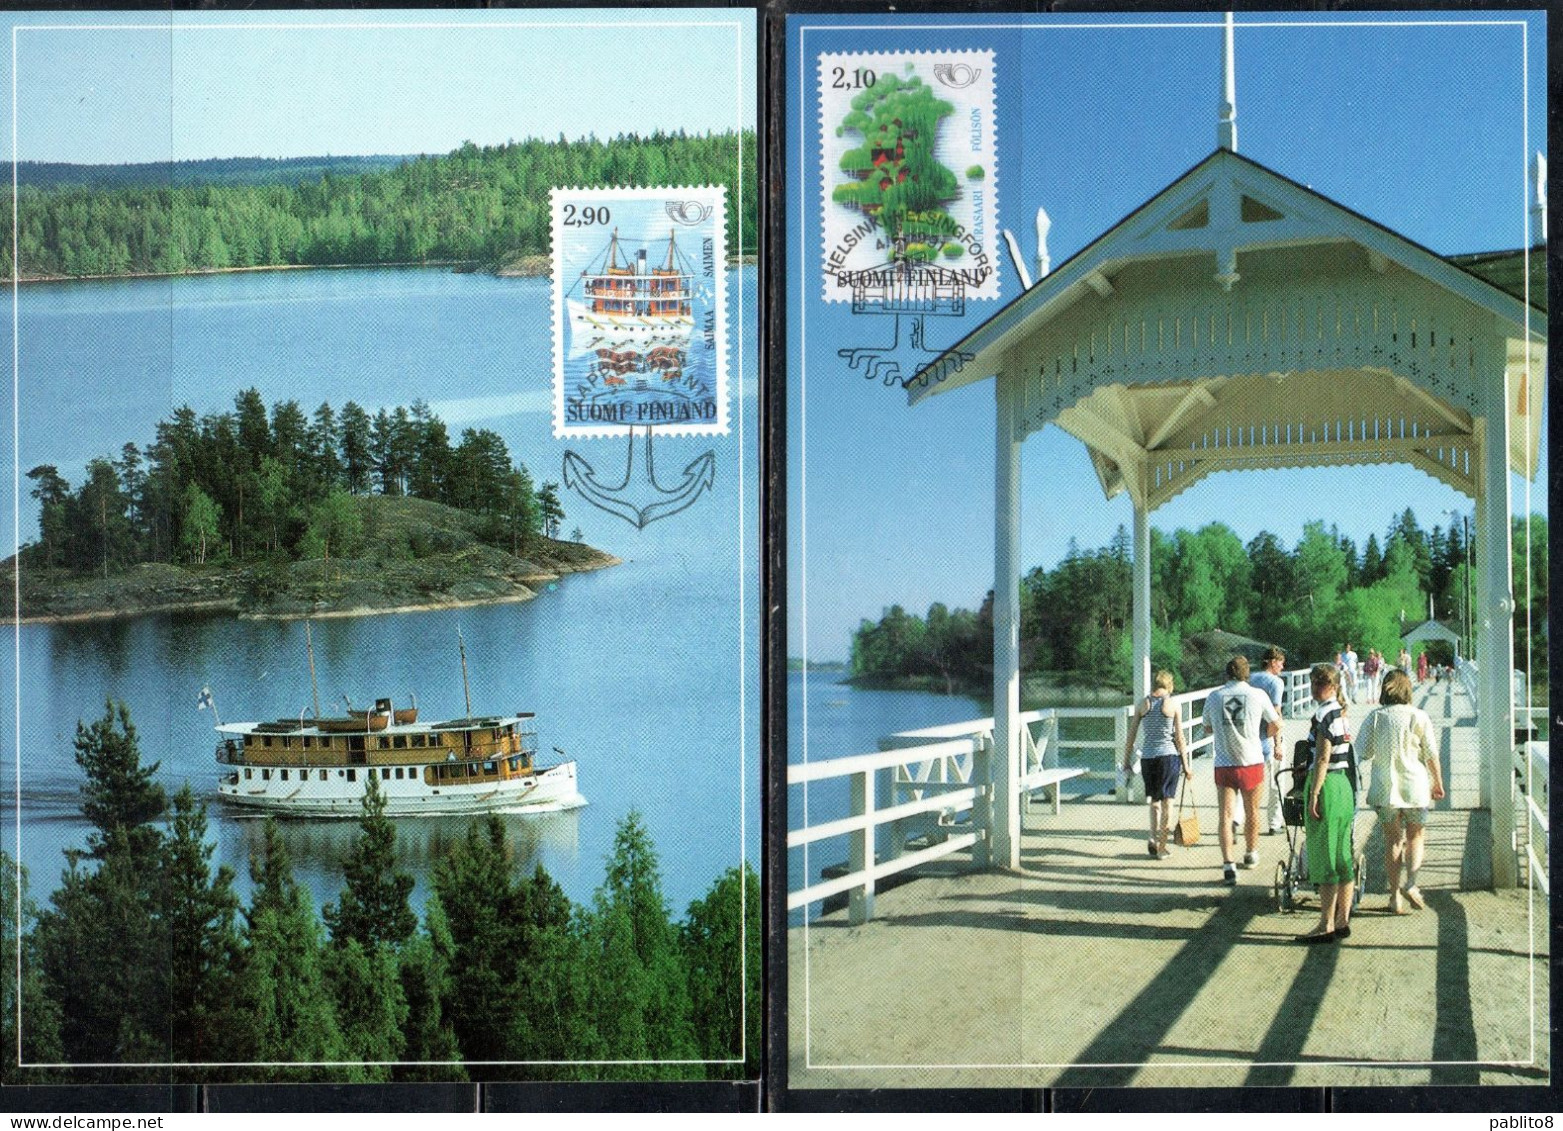 SUOMI FINLAND FINLANDIA FINLANDE 1991 TOURISM COMPLETE SET SERIE COMPLETA MAXI MAXIMUM CARD - Cartes-maximum (CM)